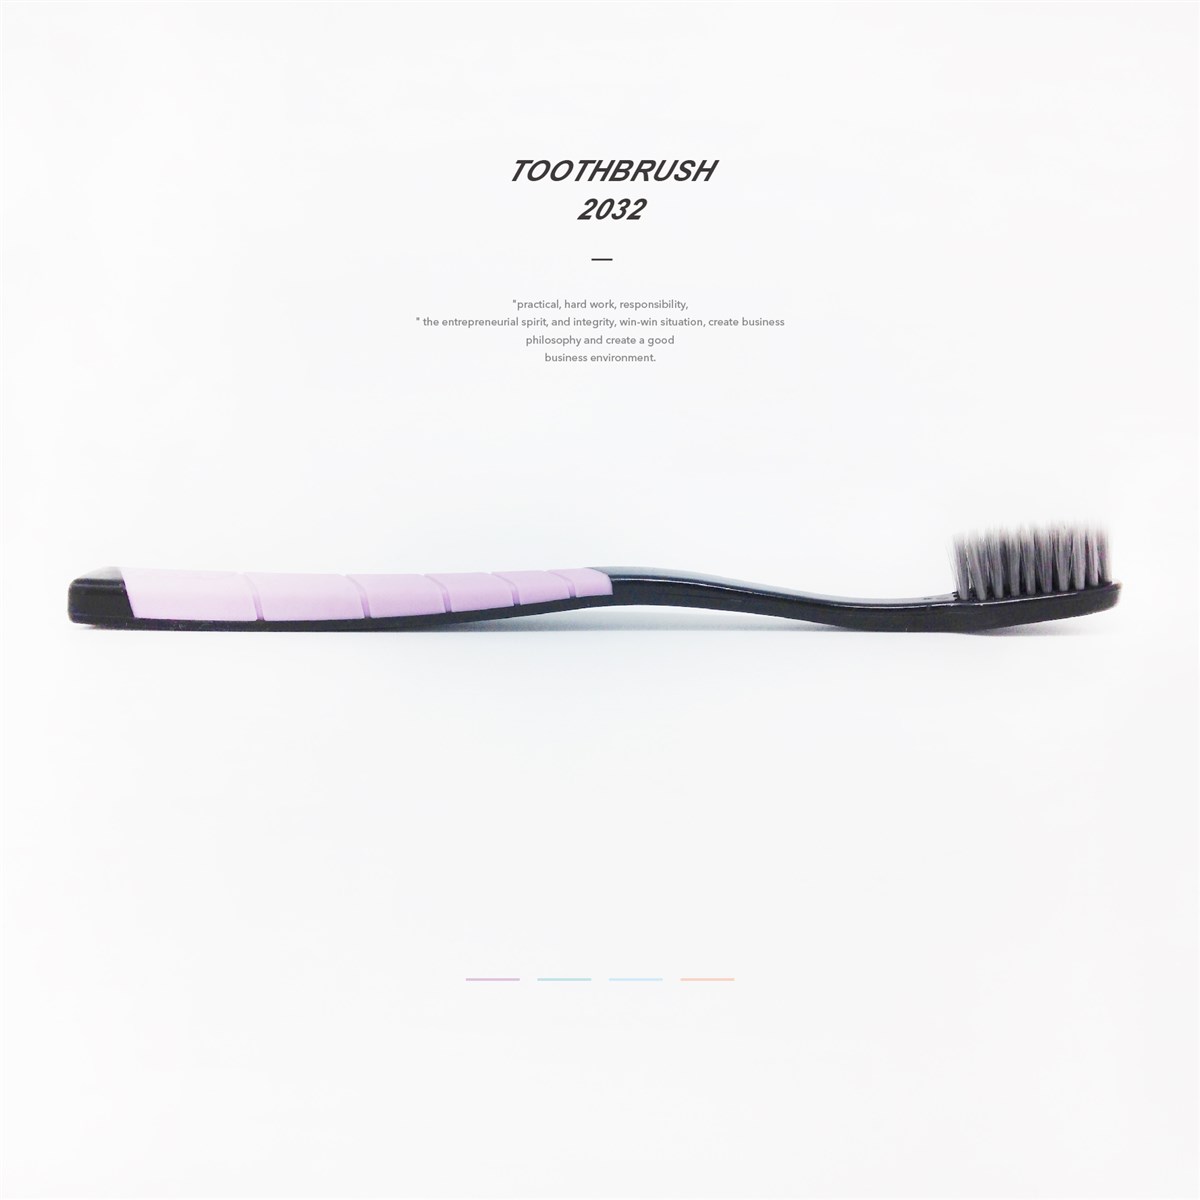 2032牙刷品牌包装--時与間設計